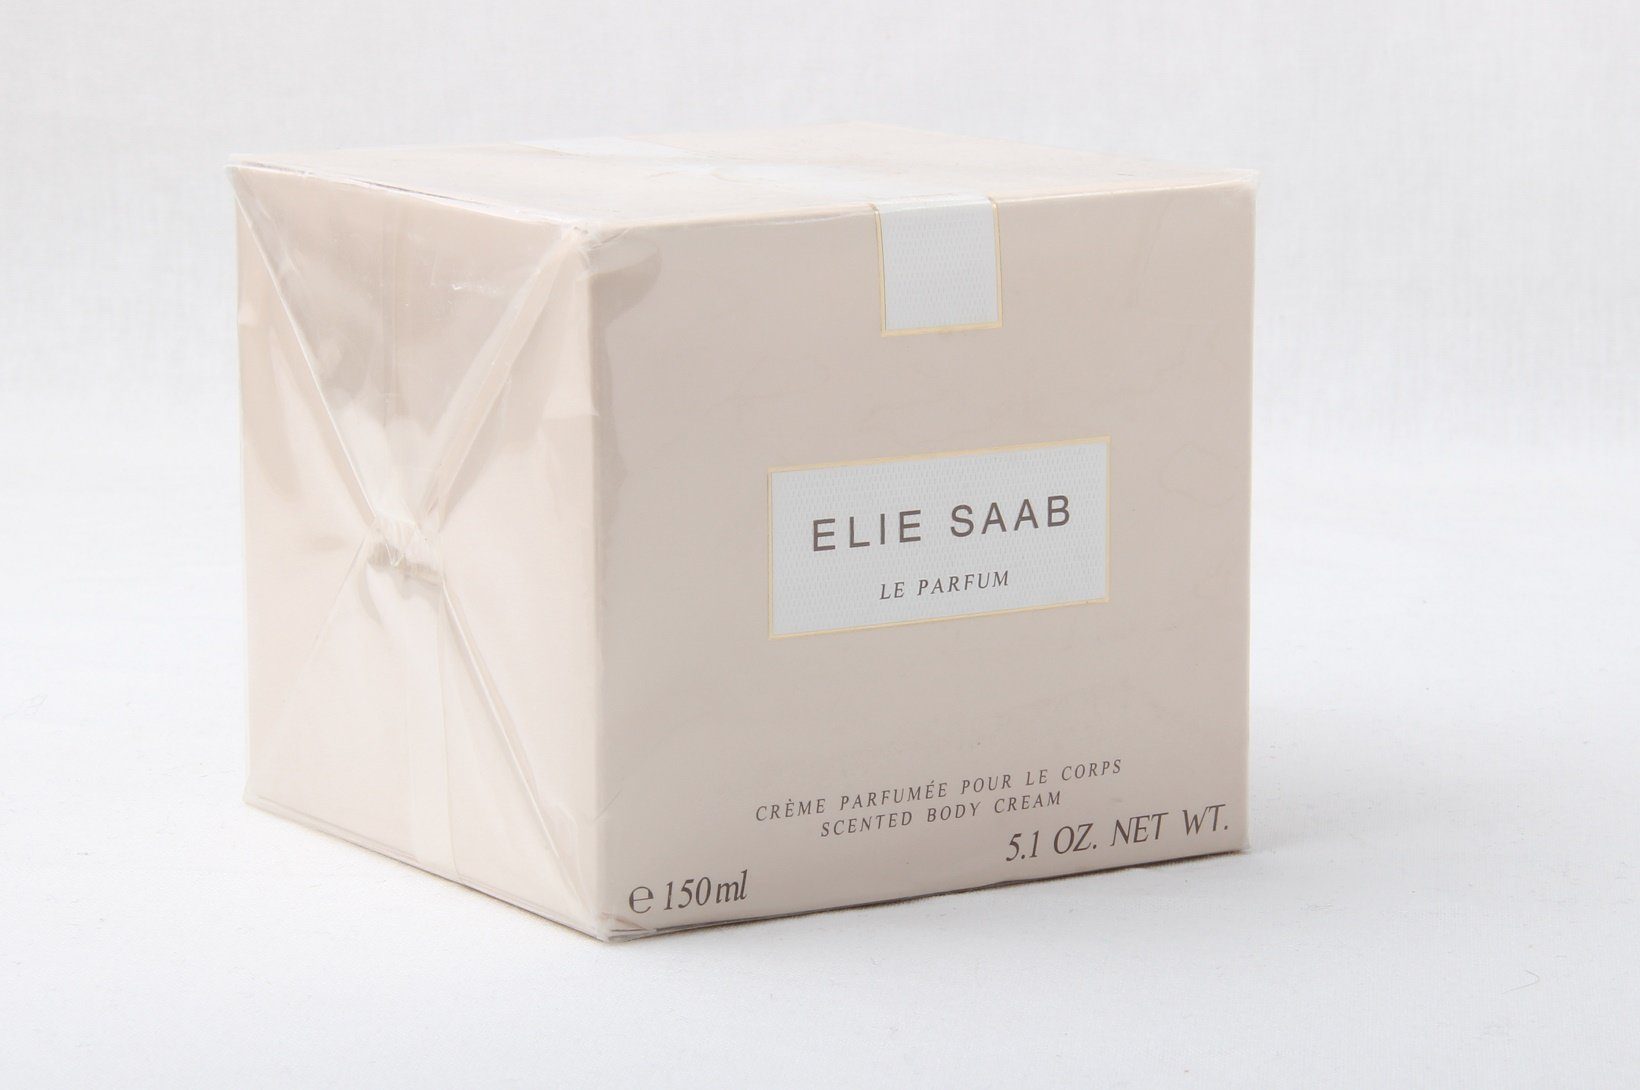 ELIE SAAB Körpercreme Elie Saab Parfum Le 150ml Creme Body